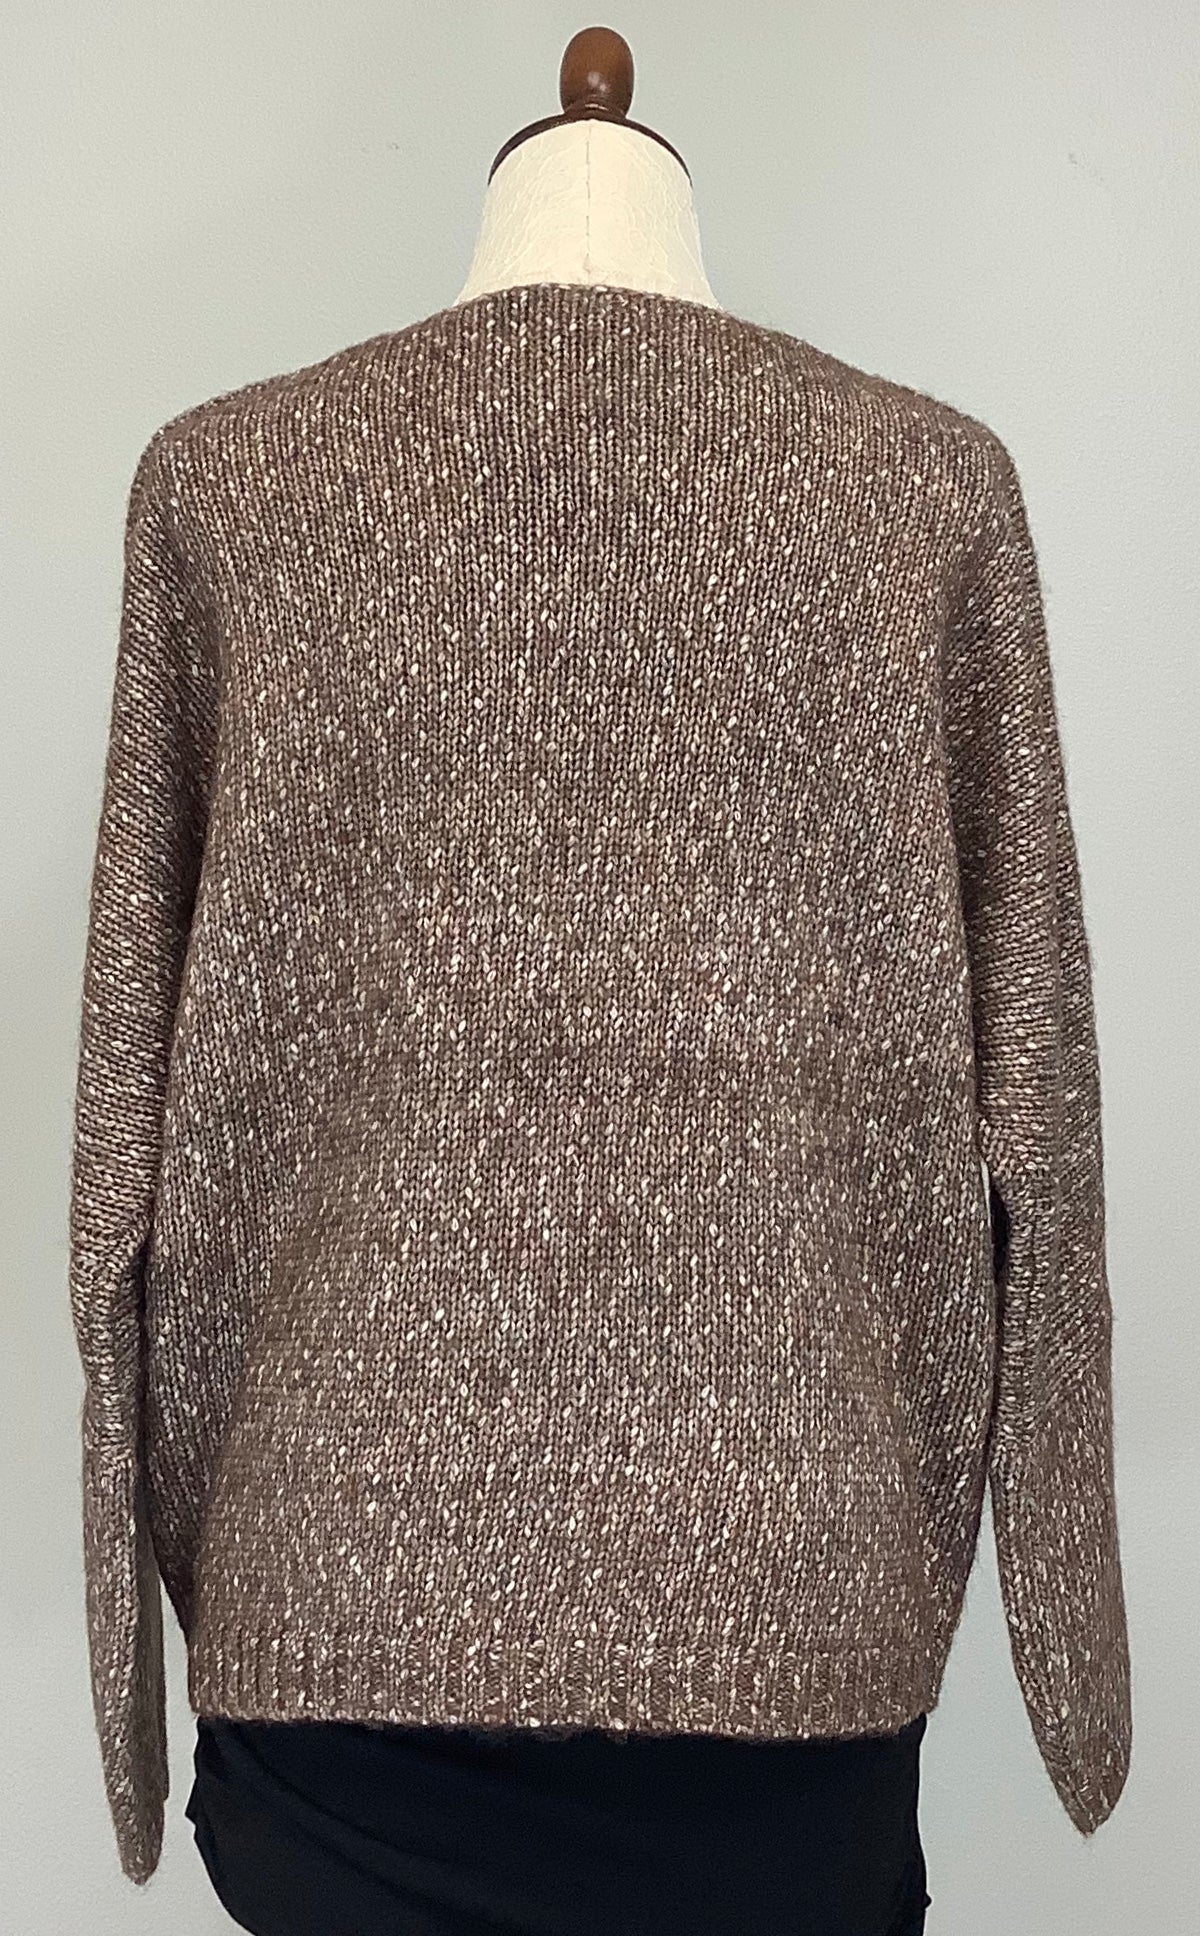 C2337 CharlieB Sweater